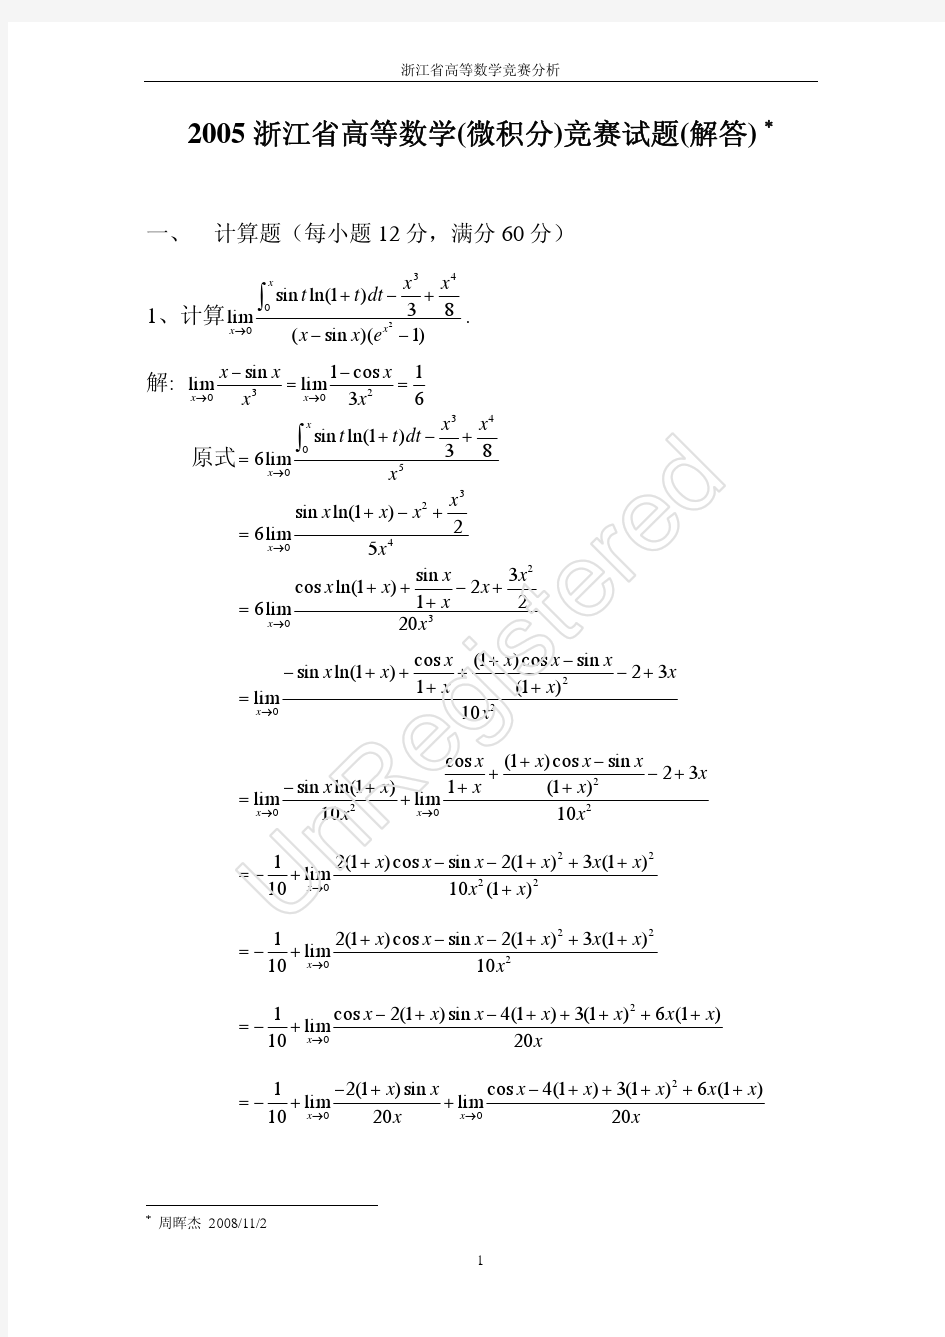 浙江省2005高等数学(微积分)竞赛试题(解答)